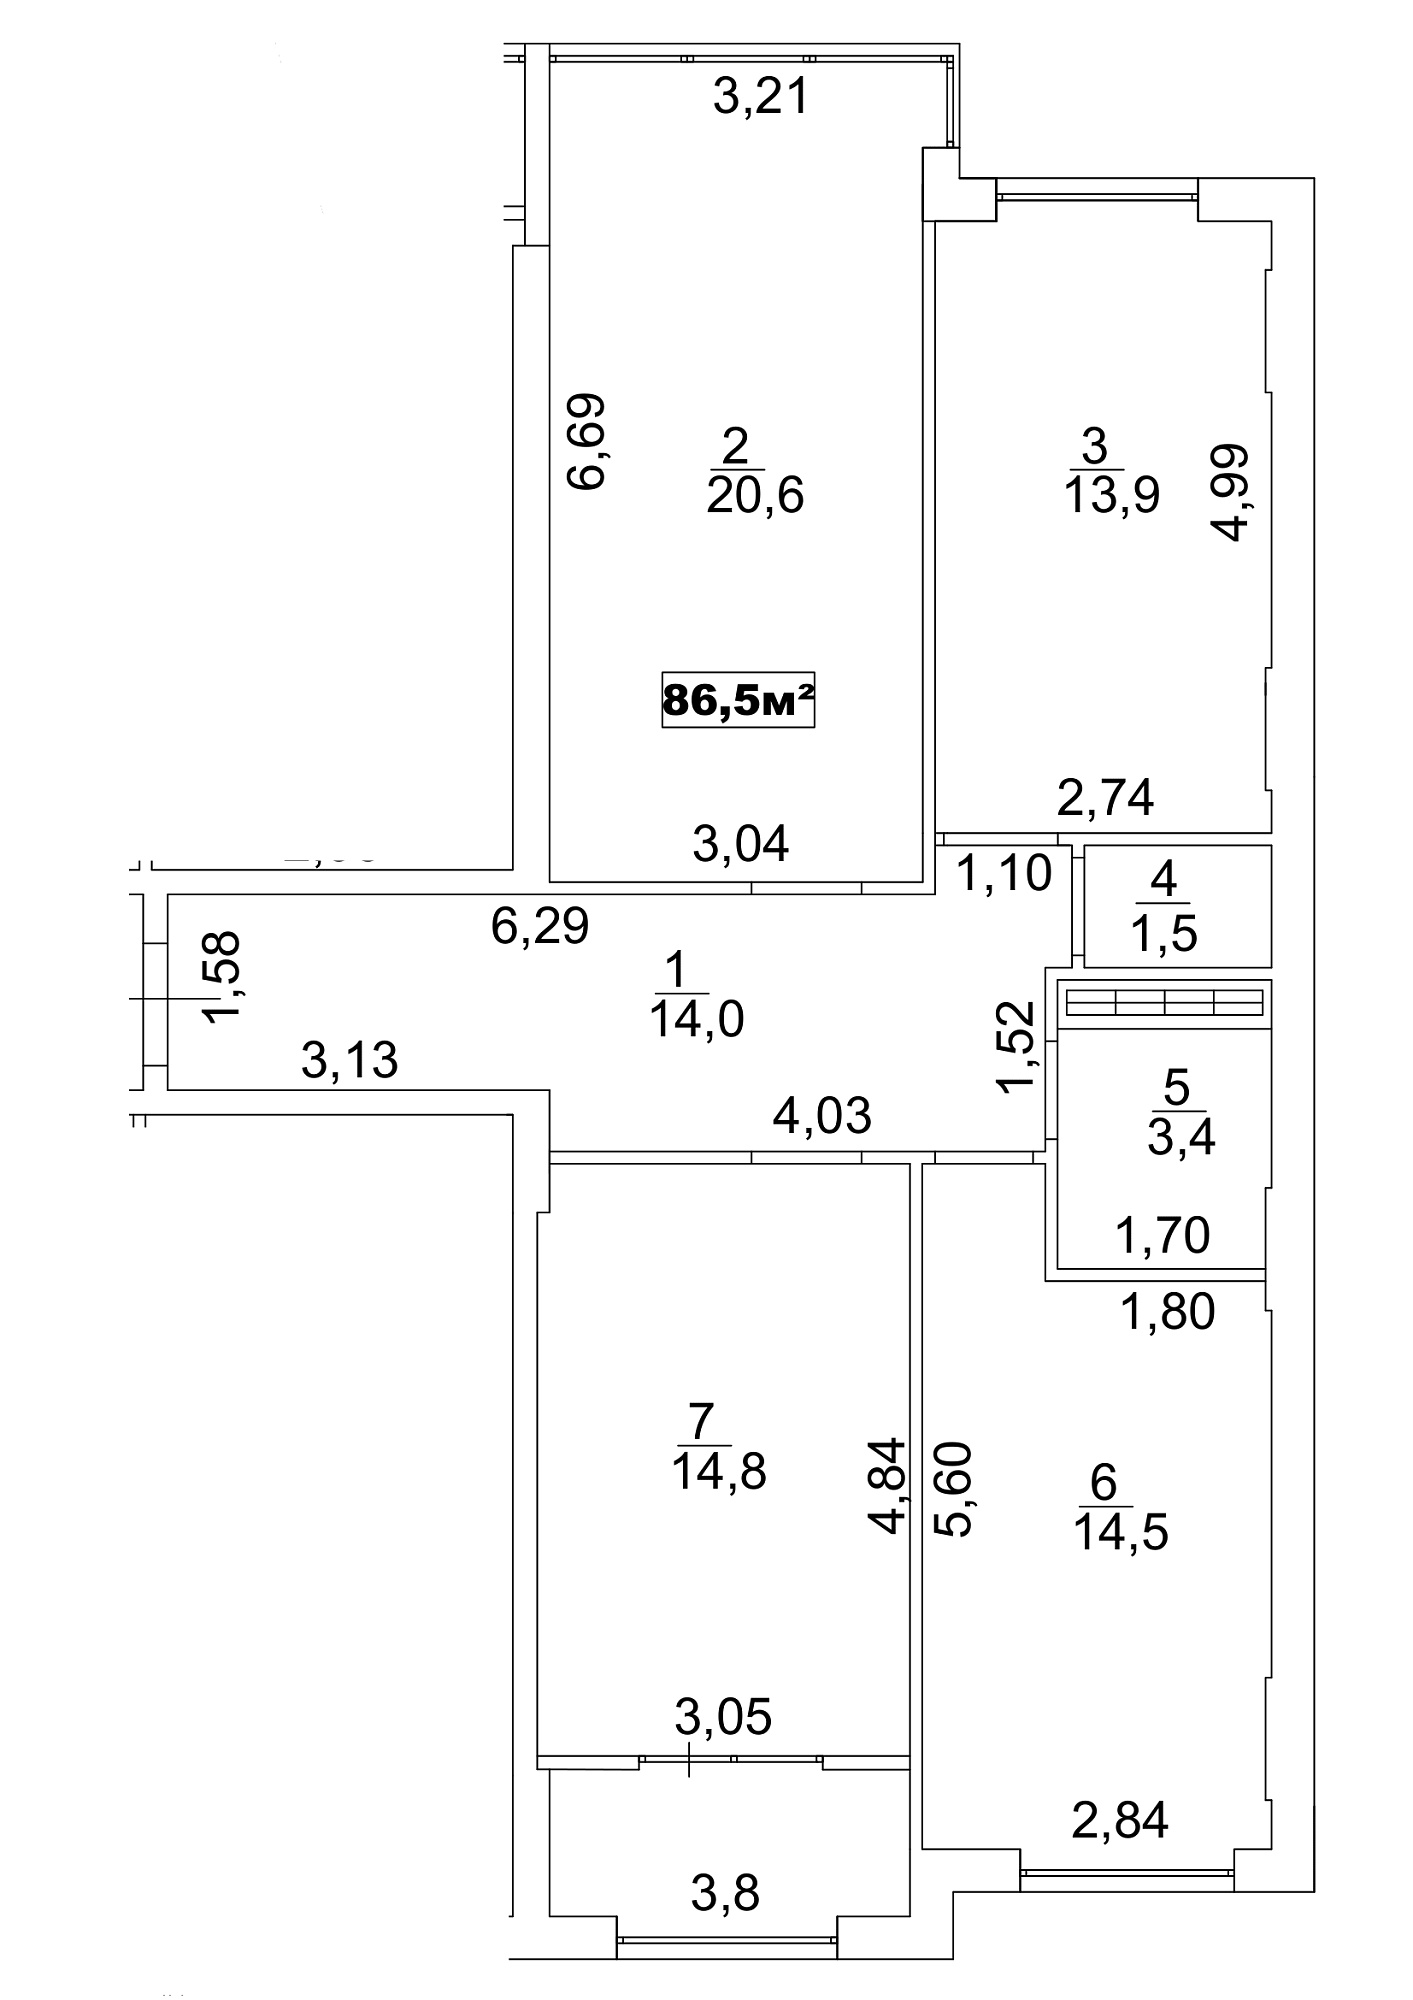 Планировка 3-к квартира площей 86.5м2, AB-13-08/00067.